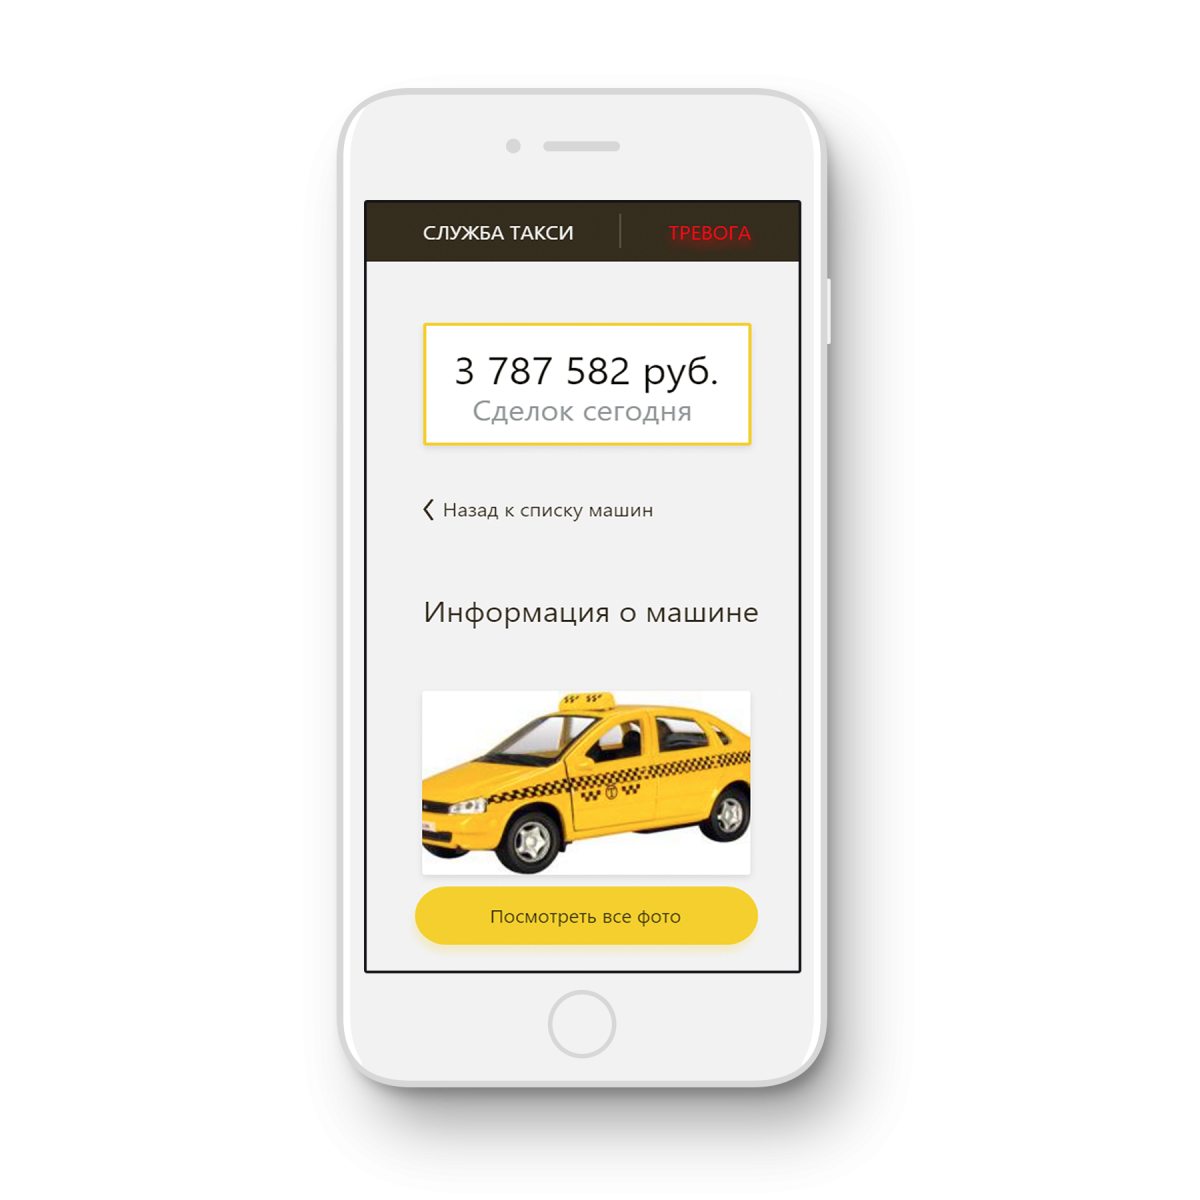 Просто такси телефон. Приложение такси. Реклама приложения такси. Мобильное приложение такси.